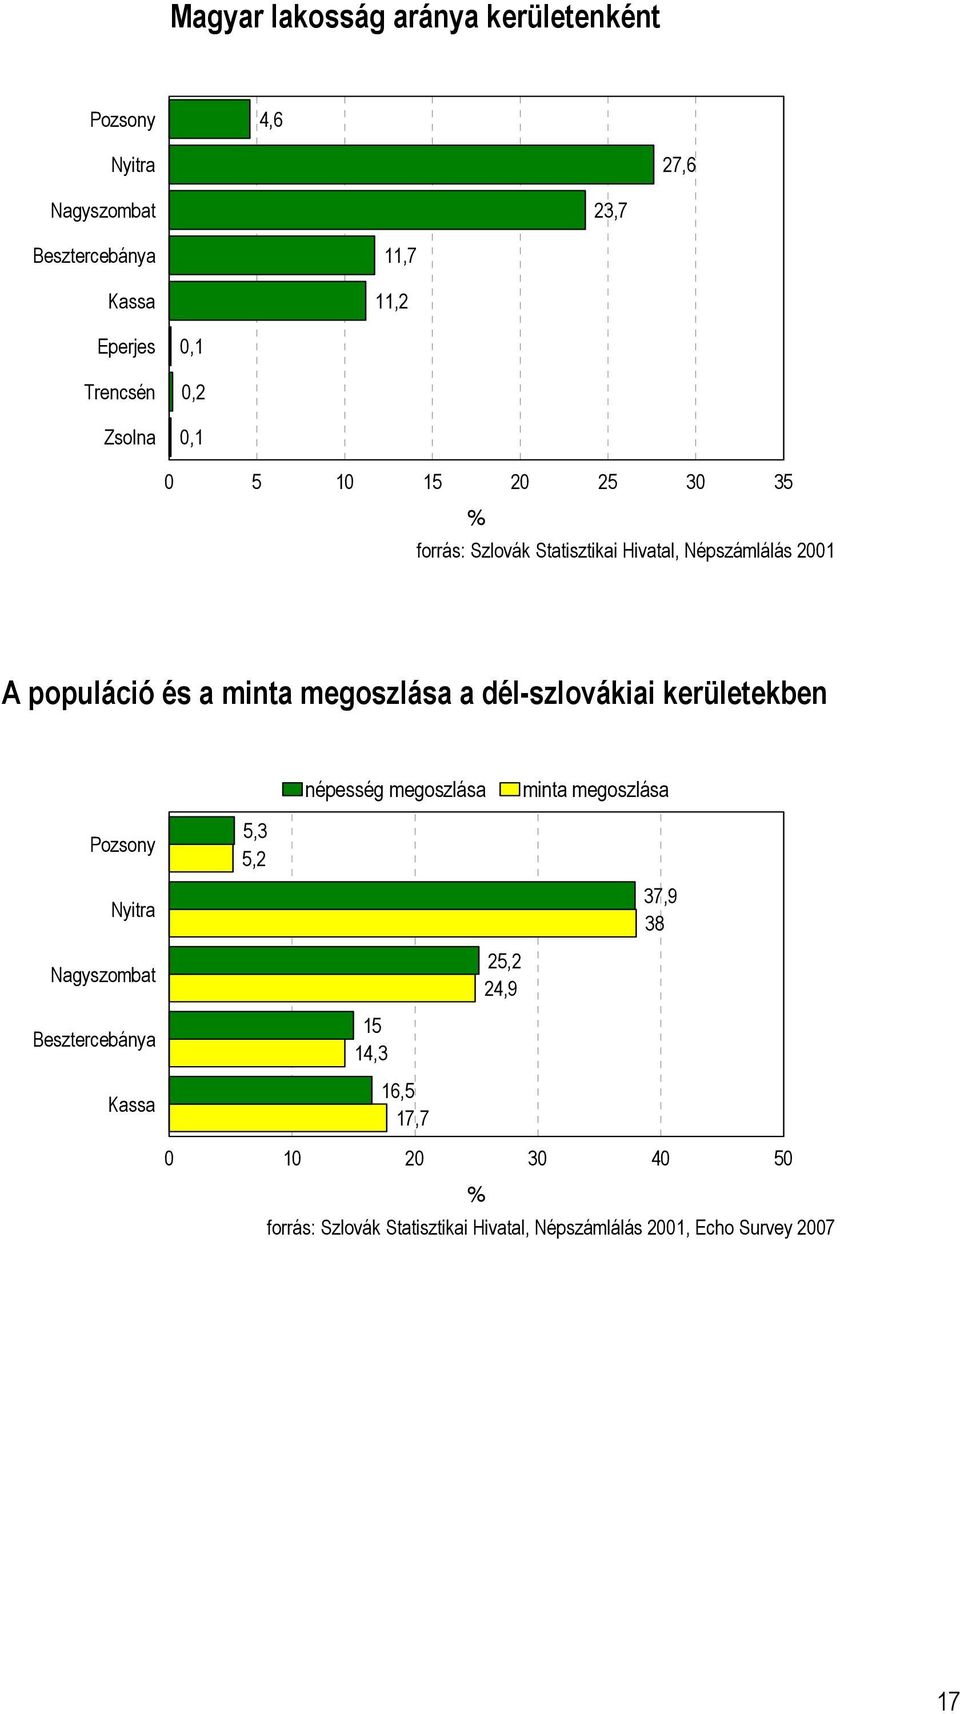 megoszlása a dél-szlovákiai kerületekben népesség megoszlása minta megoszlása Pozsony 5,3 5,2 Nyitra 37,9 38 Nagyszombat 25,2